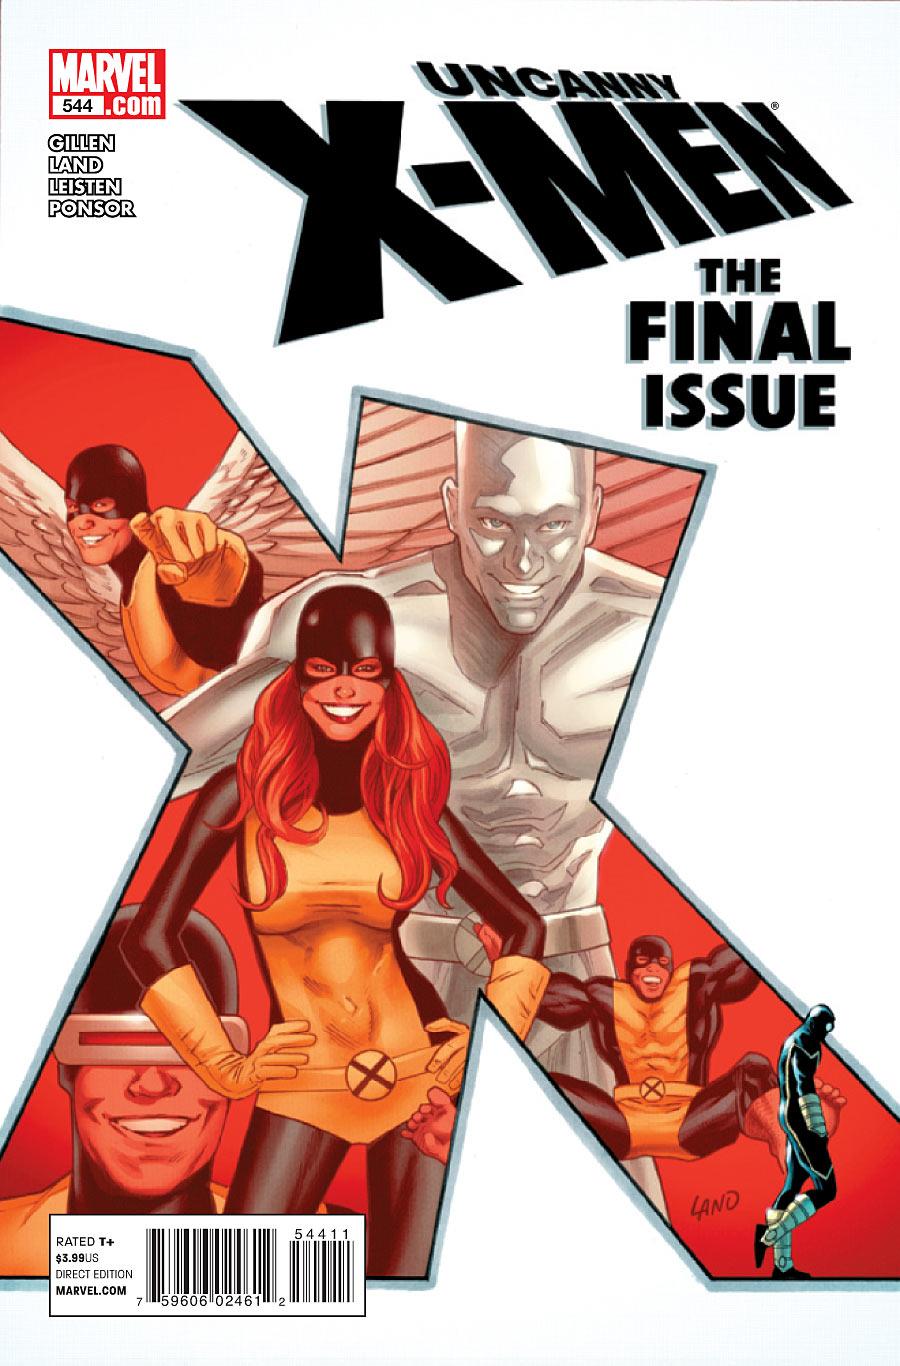 Uncanny X-Men Vol. 1 #544